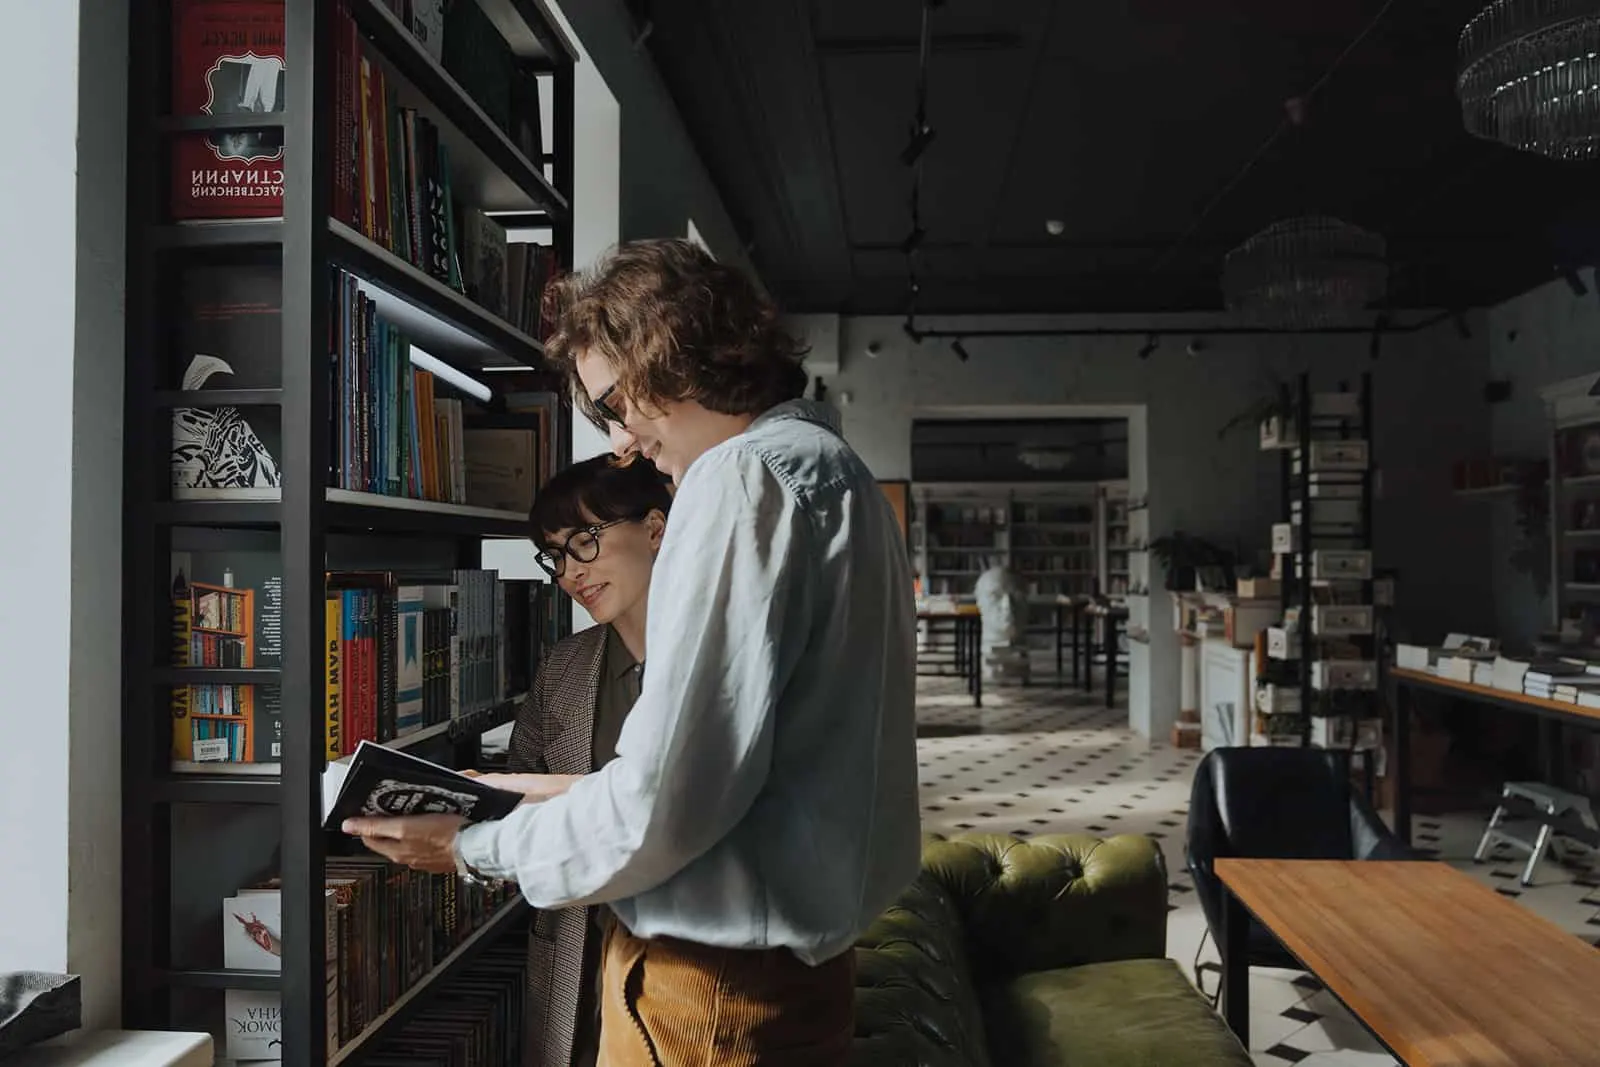 Mann und eine Frau, die ein Buch betrachten, während sie im Buchladen stehen